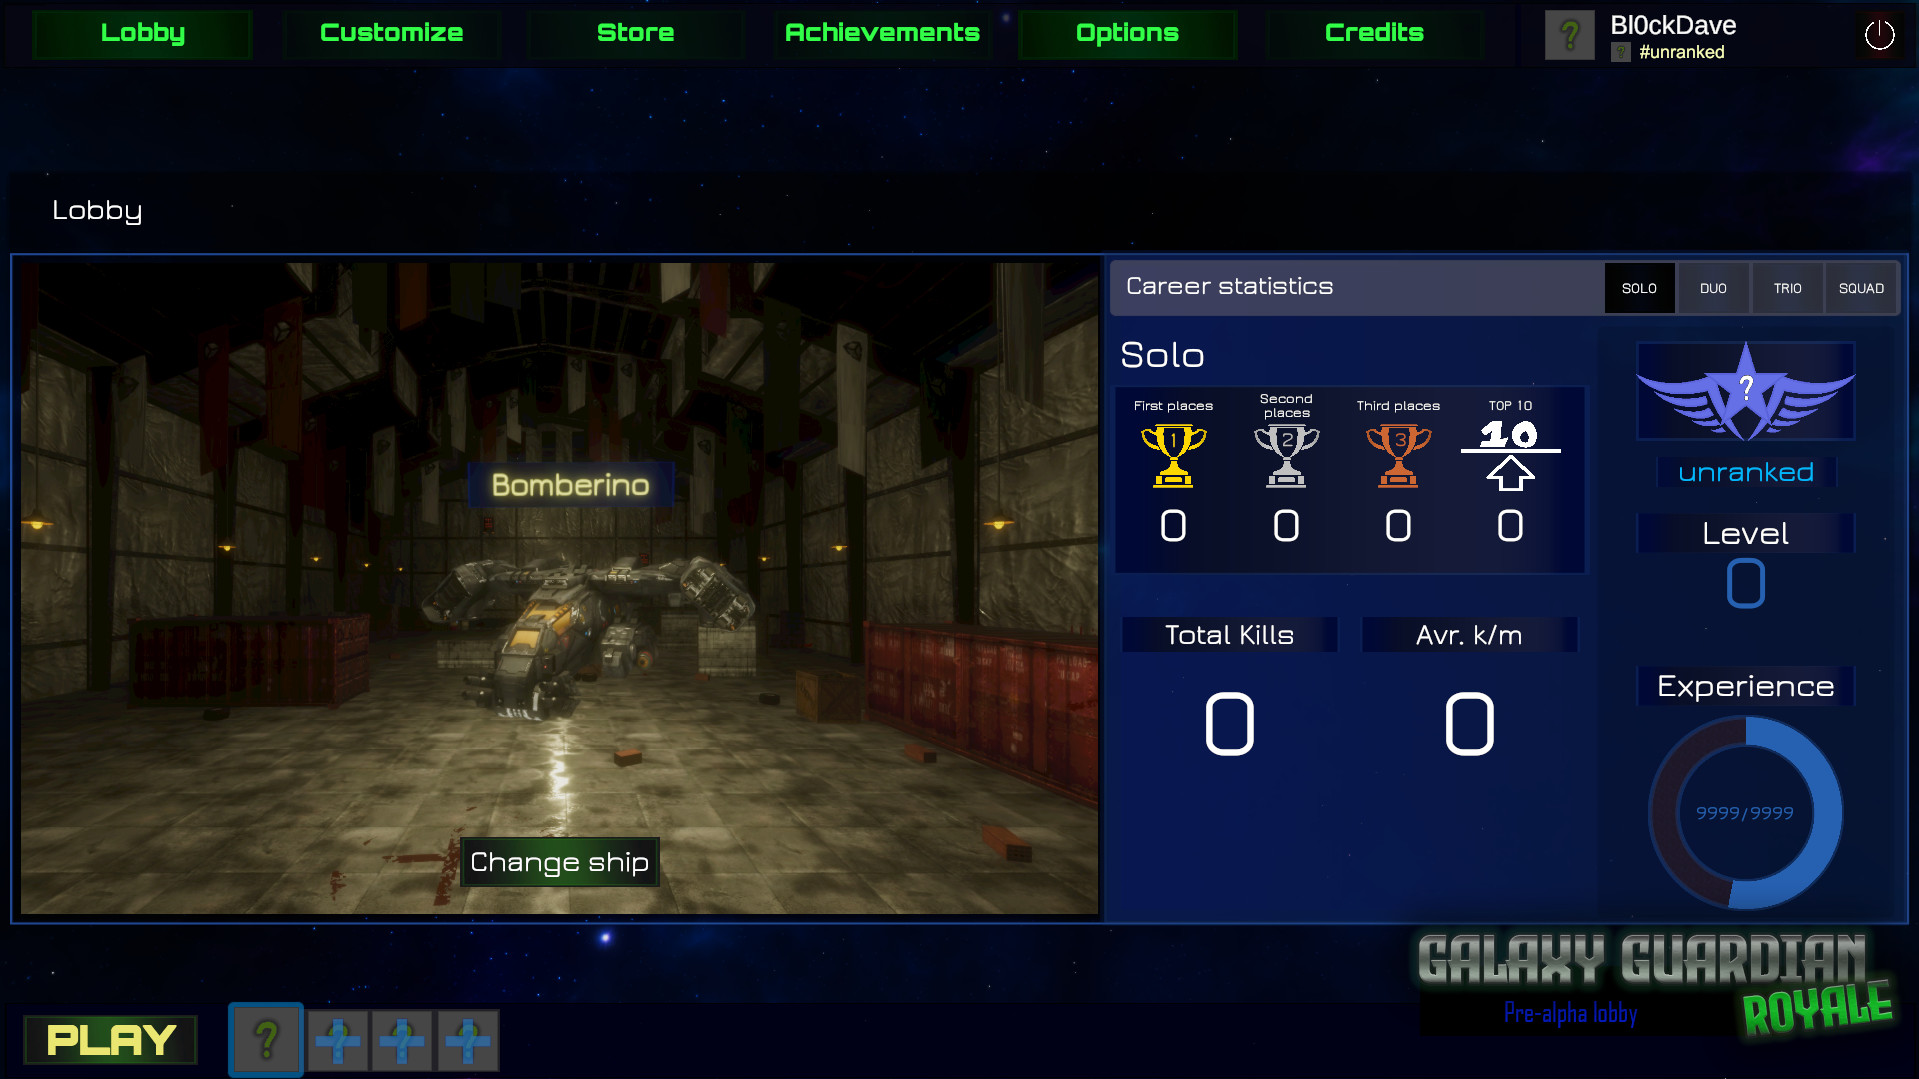 Galaxy Guardian Royale screenshot